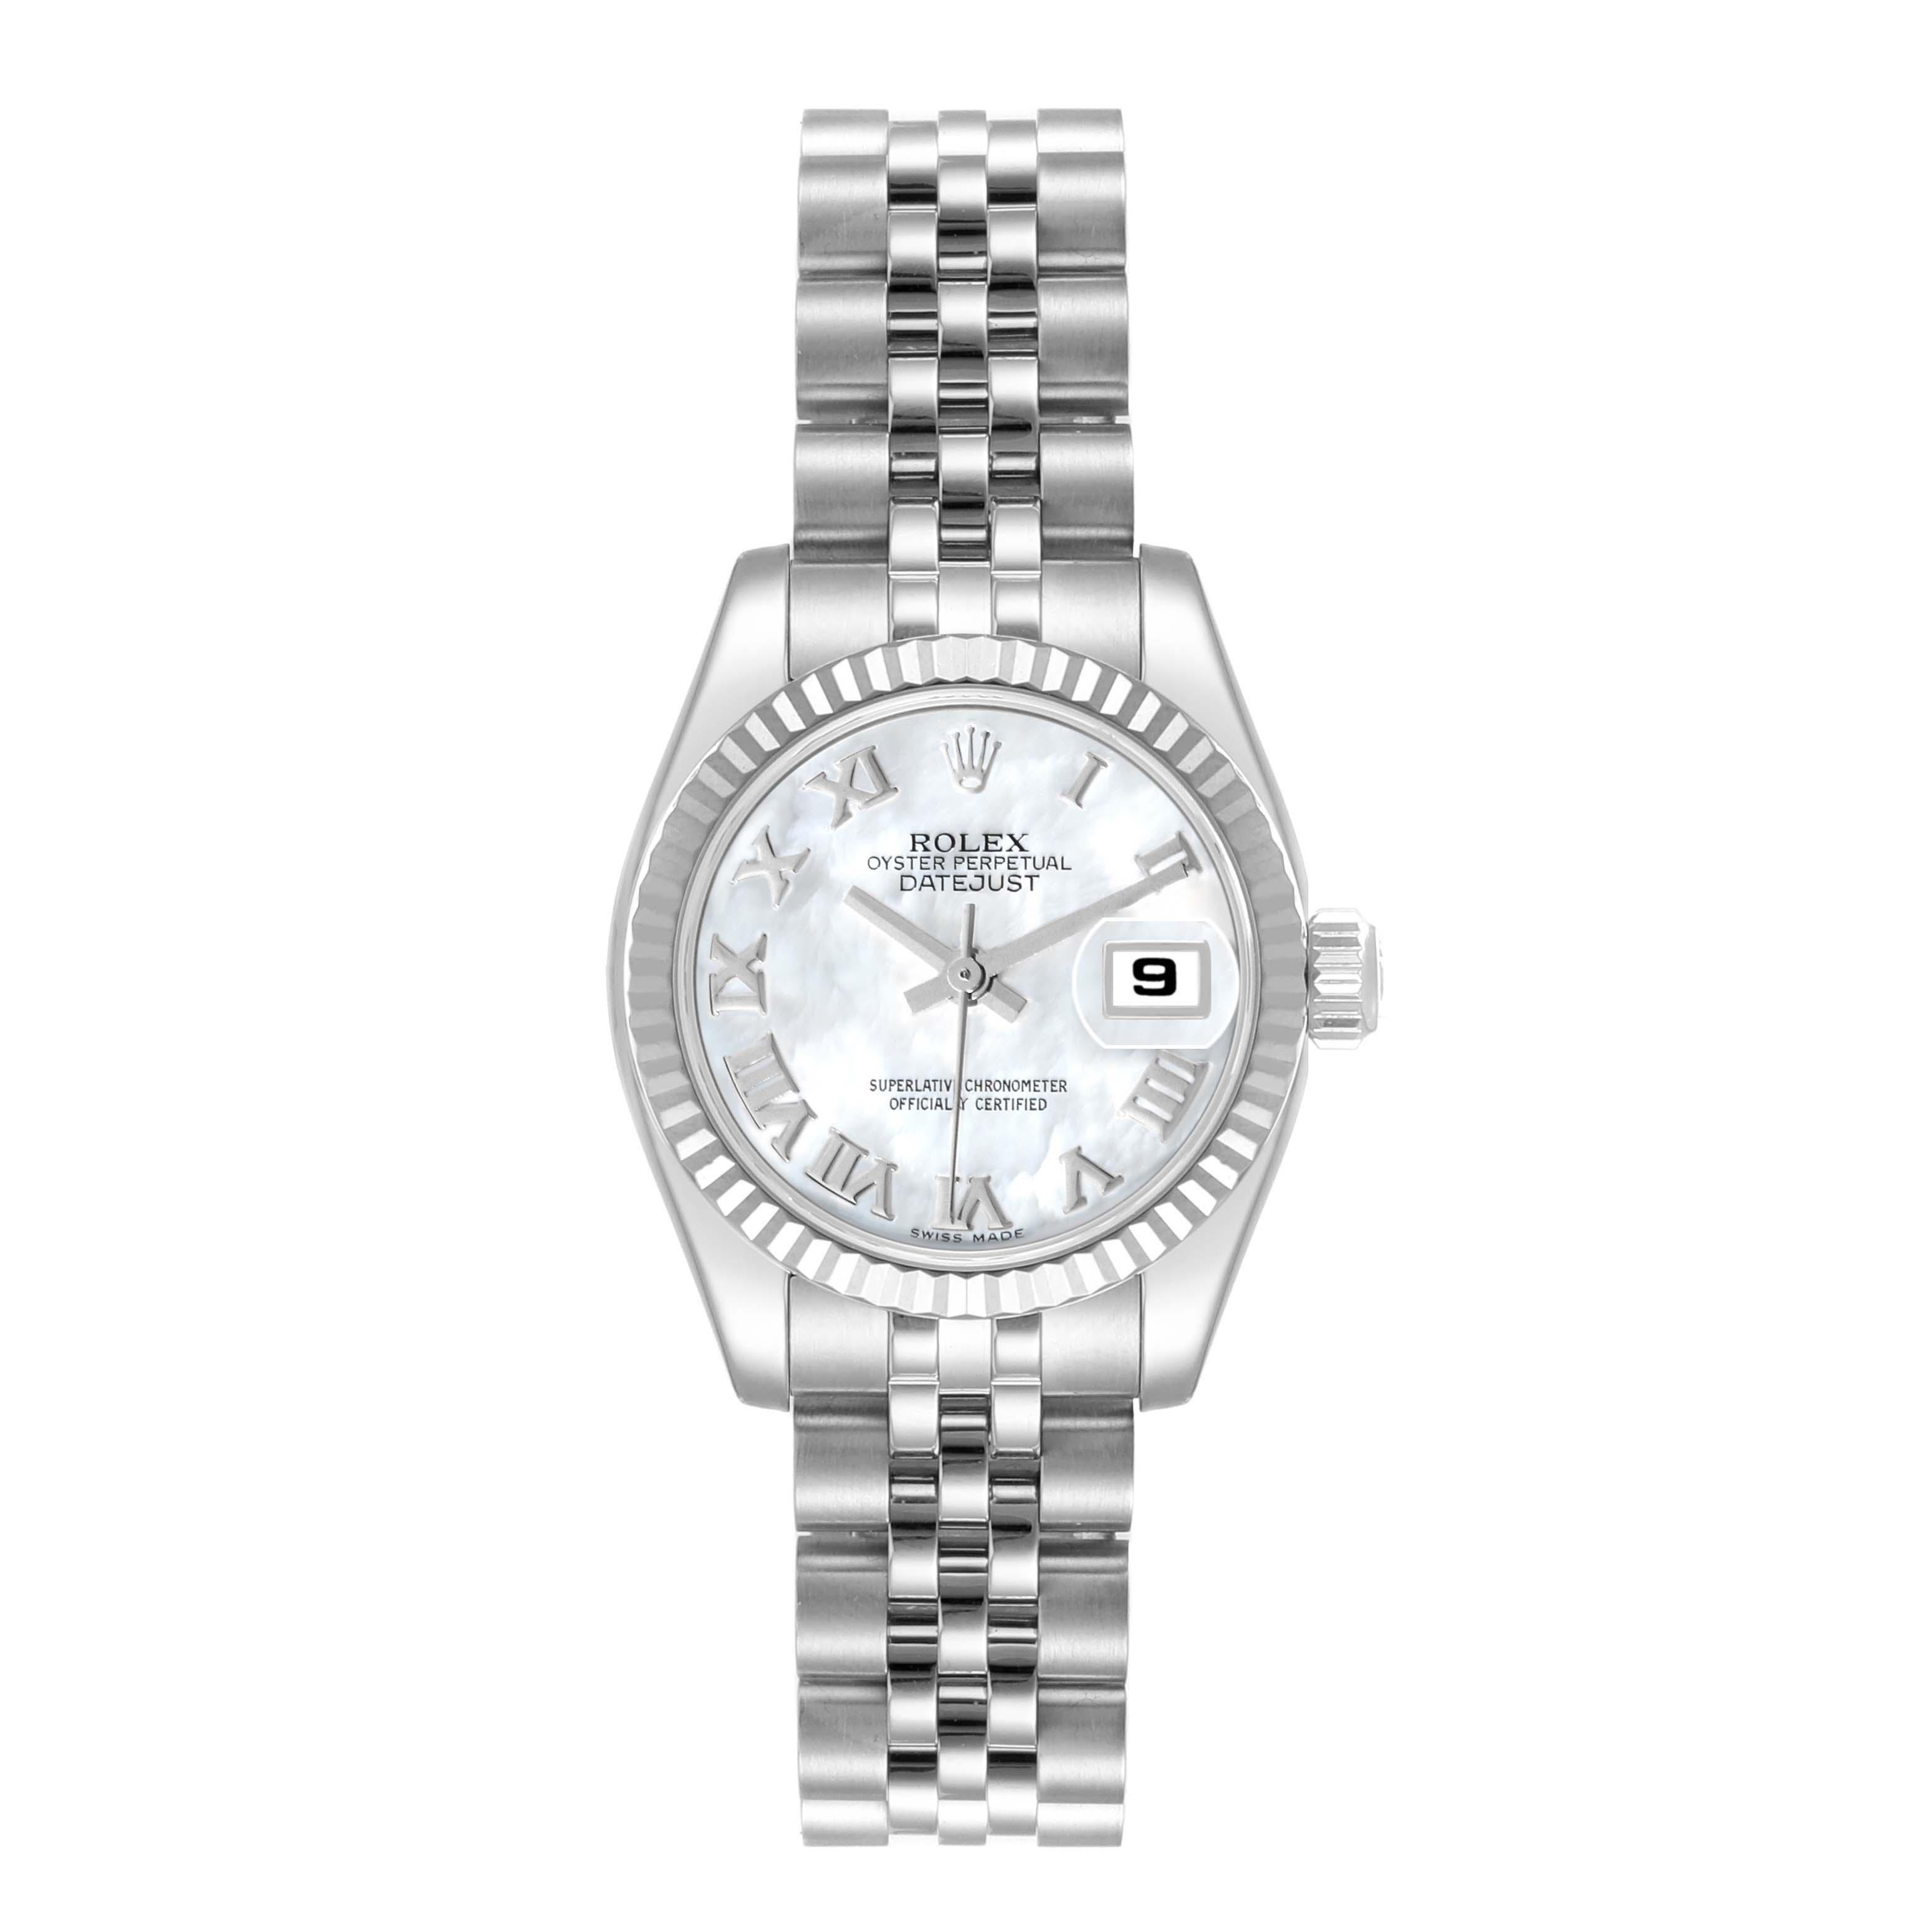 Rolex Datejust Steel White Gold Mother of Pearl Dial Ladies Watch 179174. Mouvement automatique à remontage automatique, officiellement certifié chronomètre. Boîtier oyster en acier inoxydable de 26.0 mm de diamètre. Logo Rolex sur la couronne.